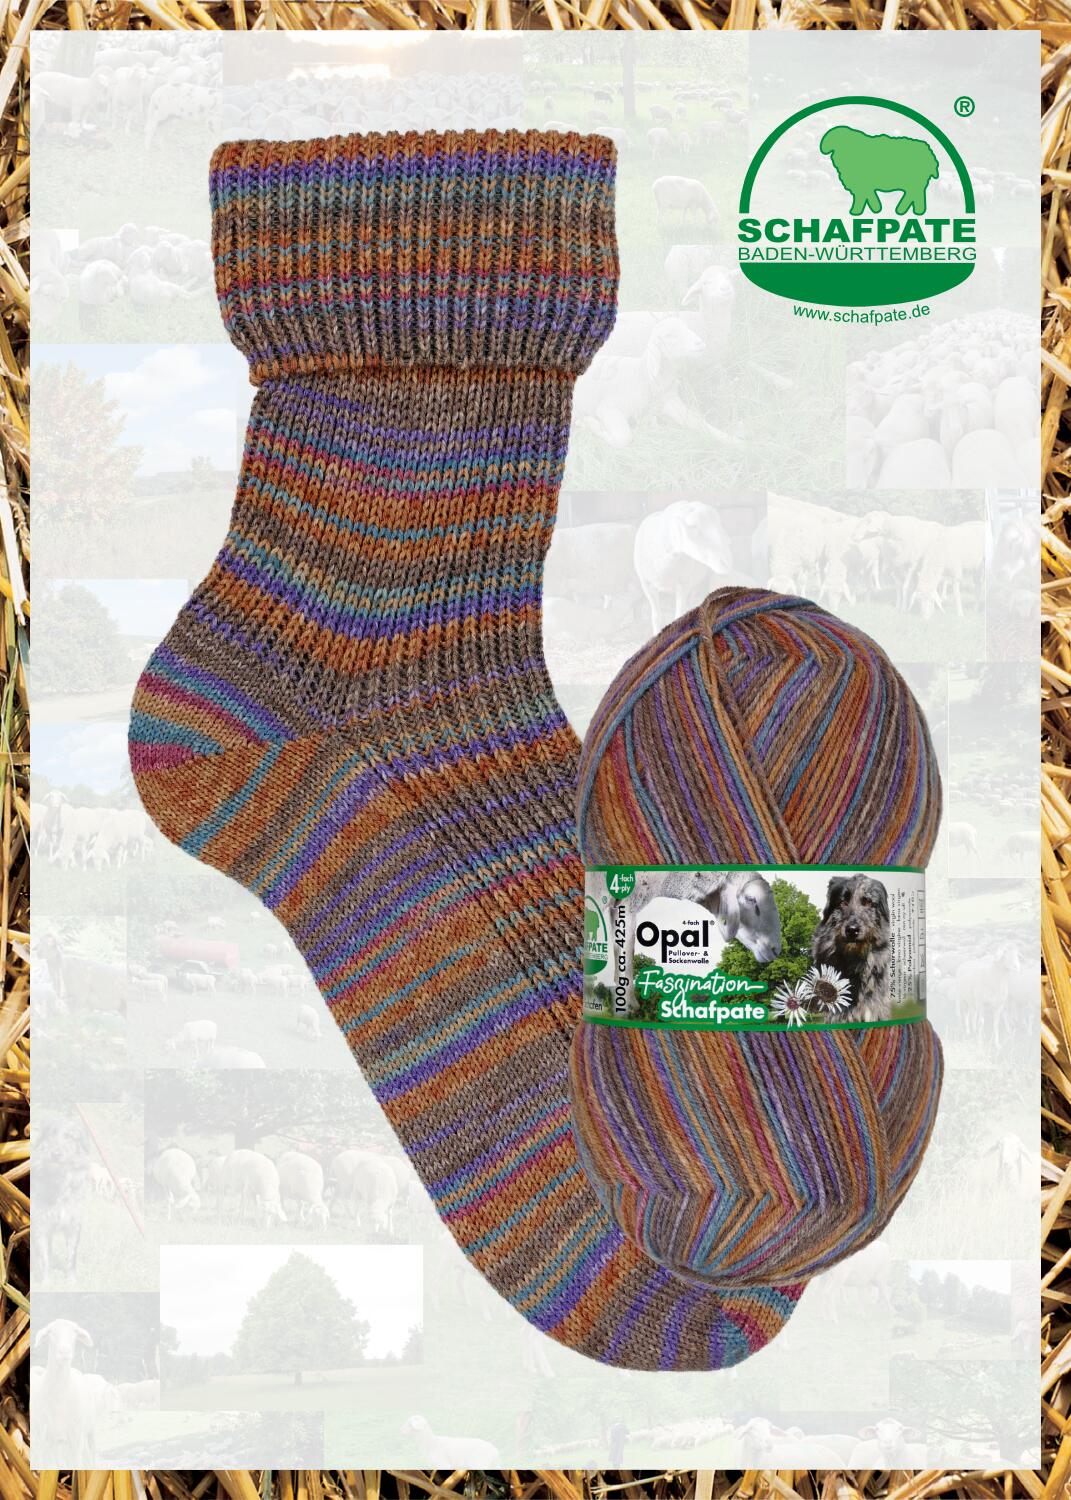 Opal Sockenwolle  "Schafpate " 4-fach Sockengarn Farbe: Schafpatentreffen